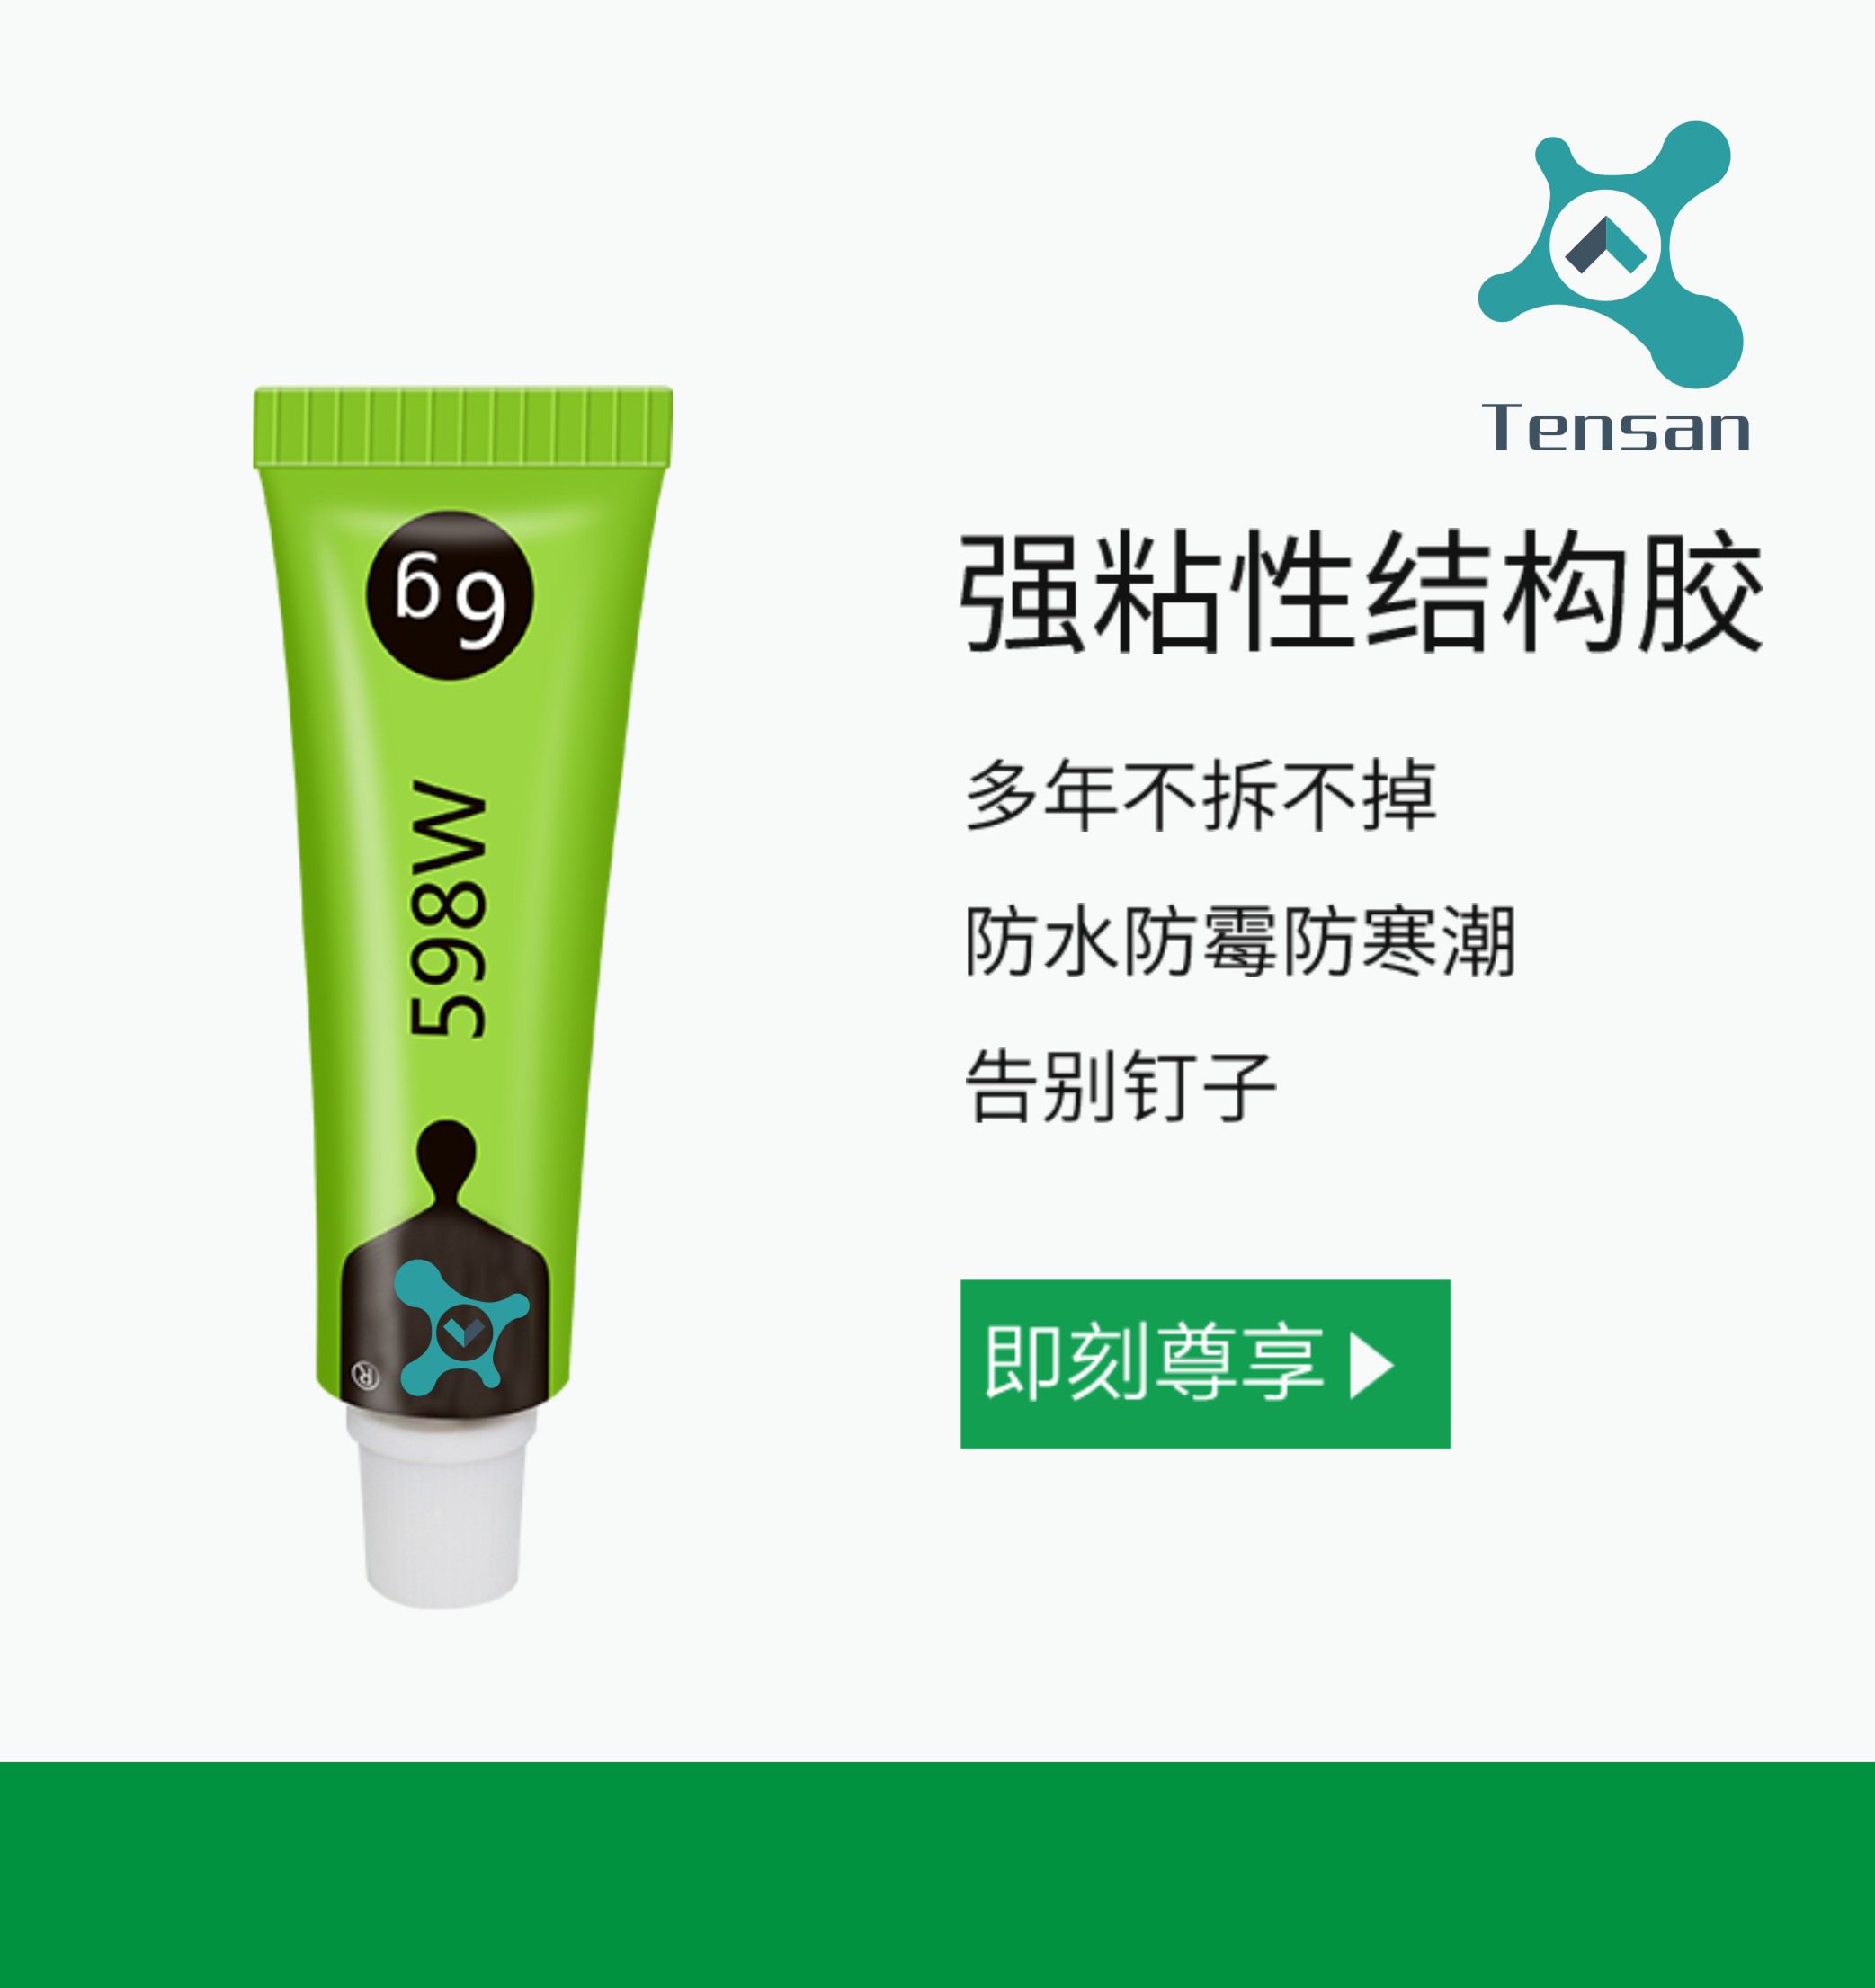 La plataforma TENSAN MADE IN CHINA está en línea